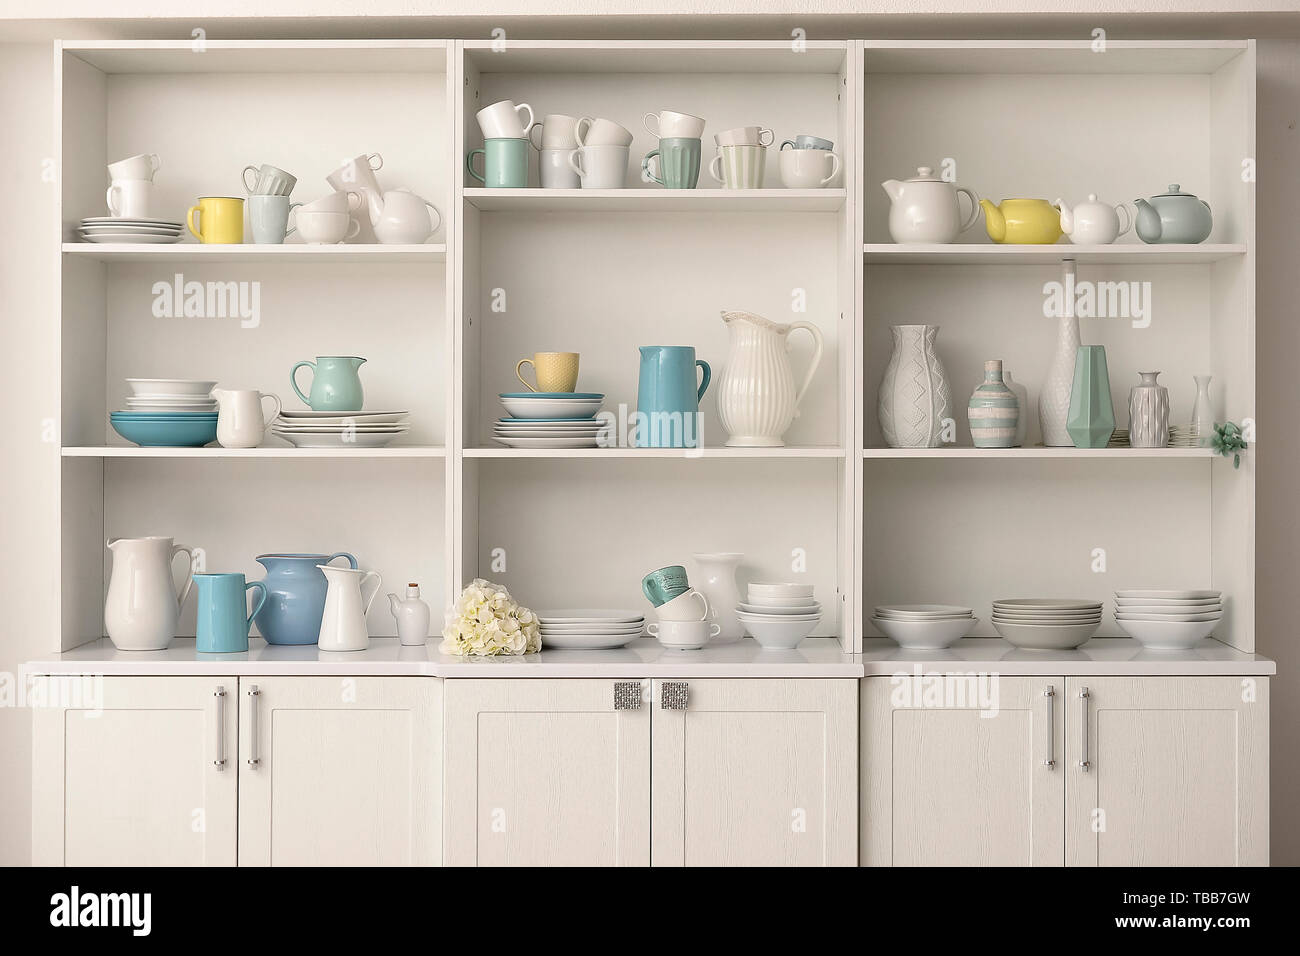 Armoire avec vaisselle propre dans la cuisine Photo Stock - Alamy